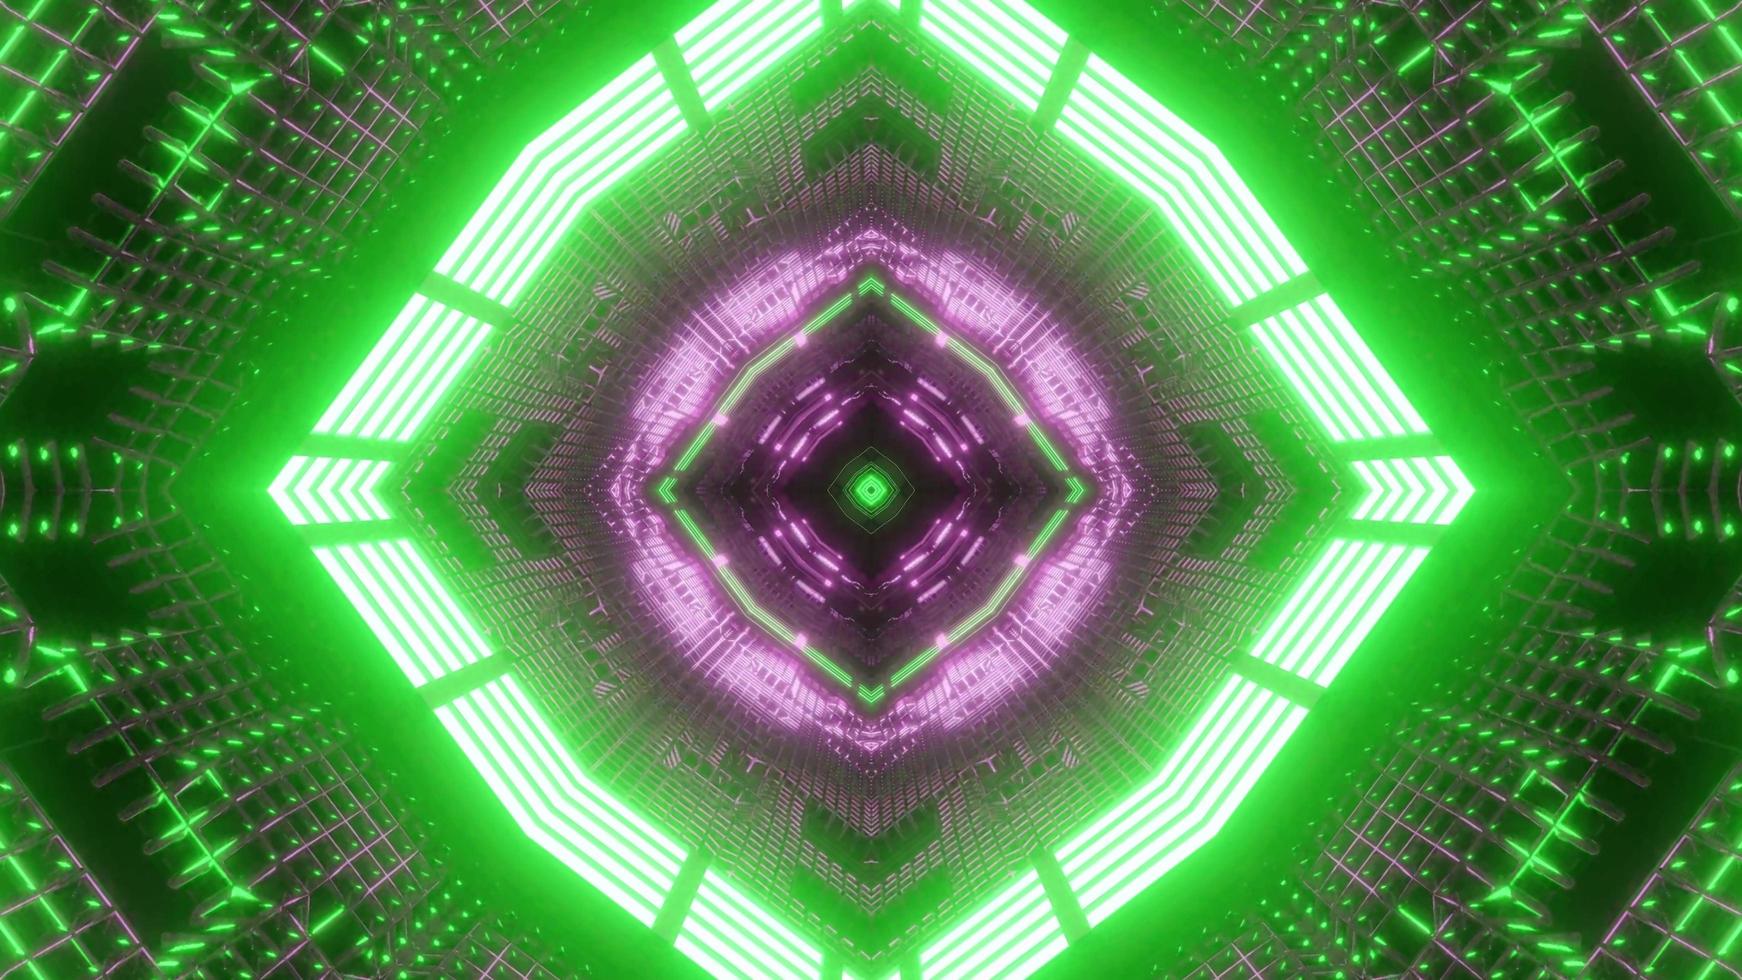 Illustration de conception kaléidoscope 3d vert et violet pour le fond ou la texture photo